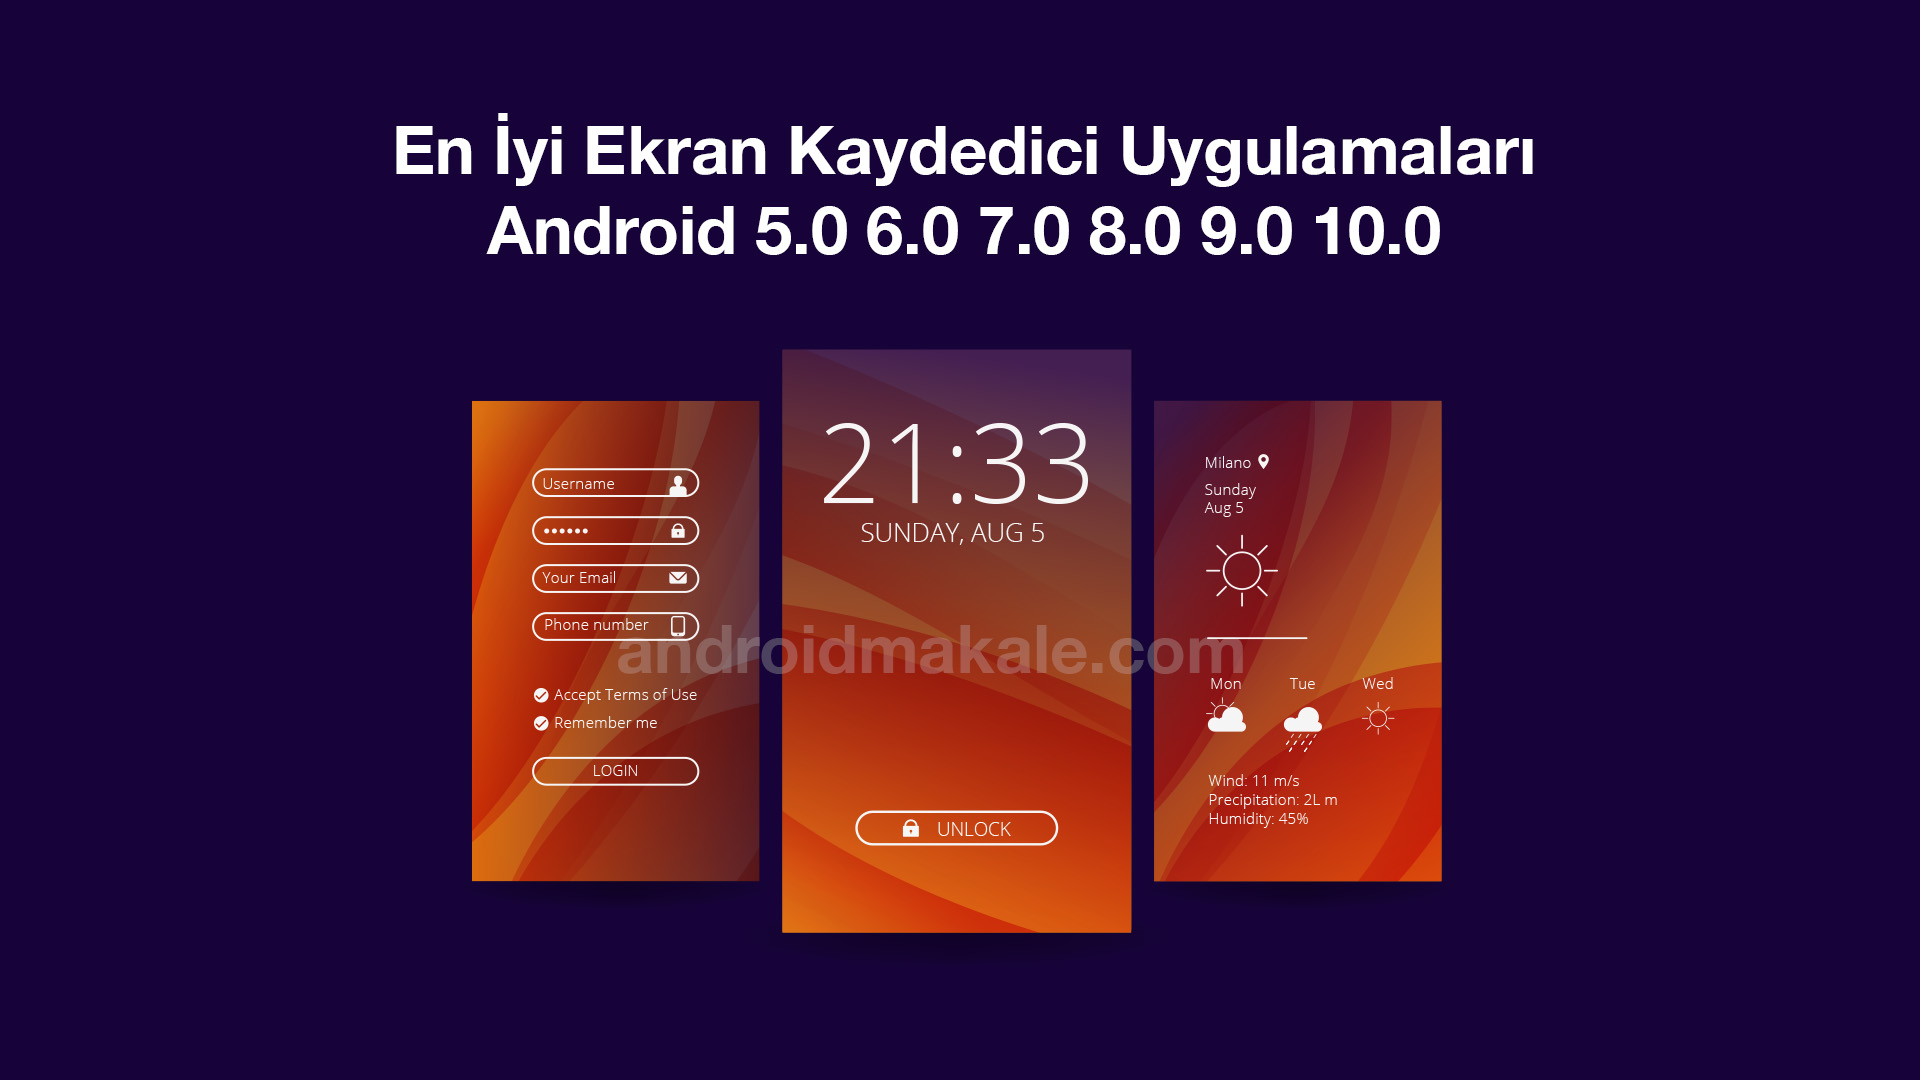 En İyi Ekran Kaydedici Uygulamaları Android 5-6-7-8-9-10 Screenshot ekran görüntüsü kaydetme android 